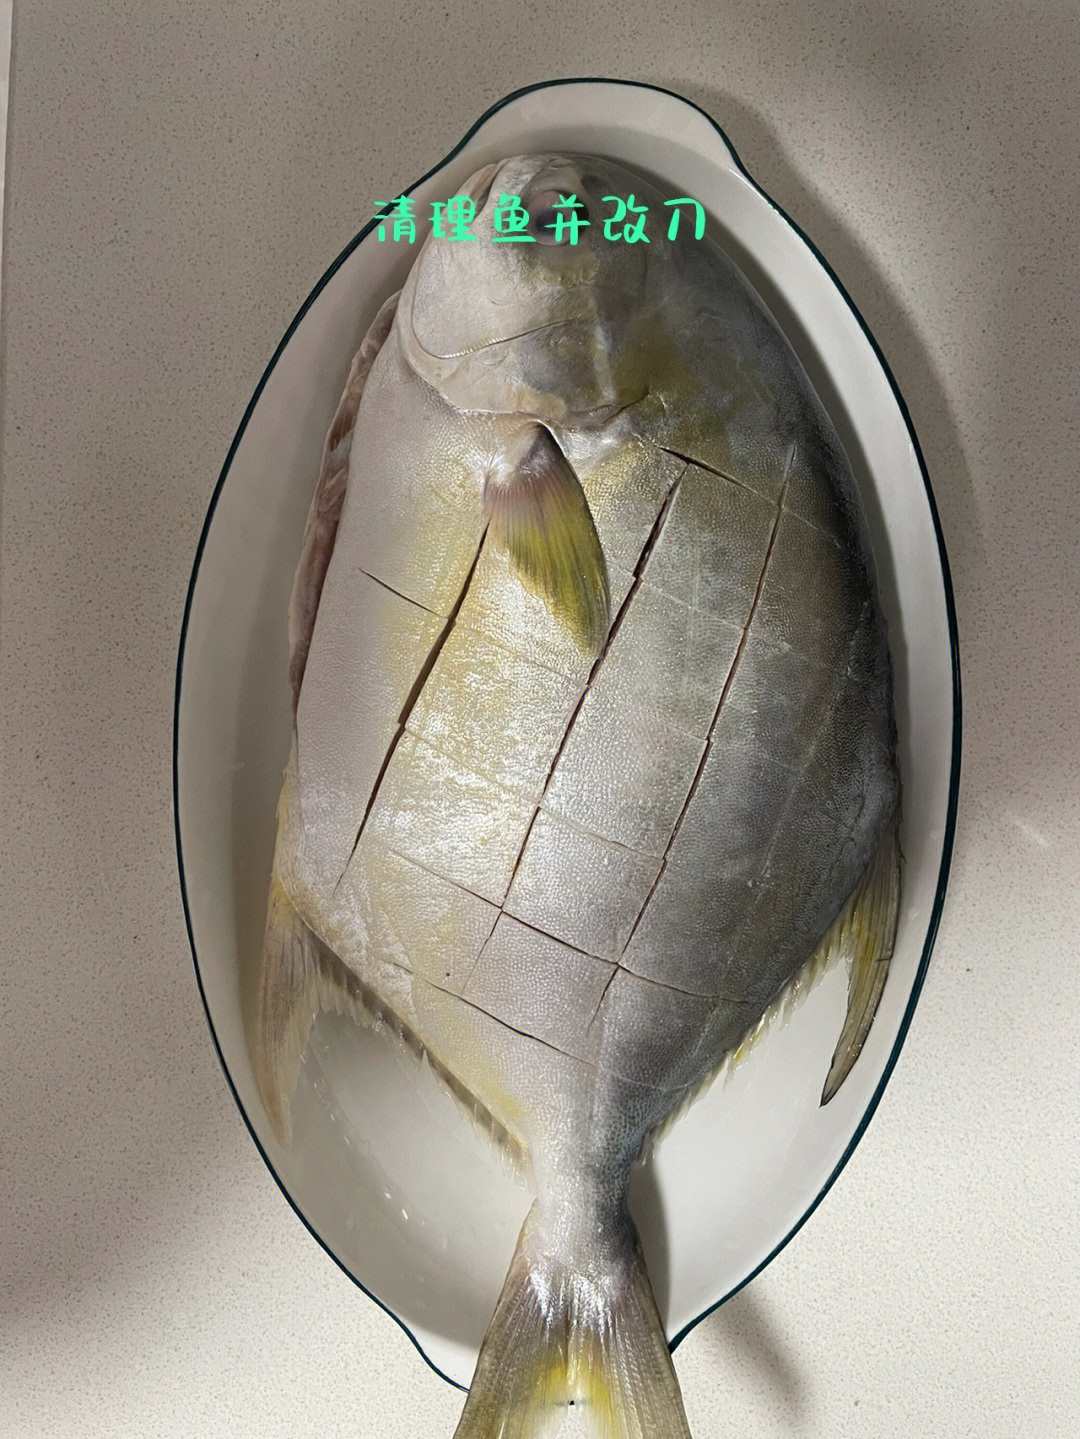 金鲳鱼蒸多久图片